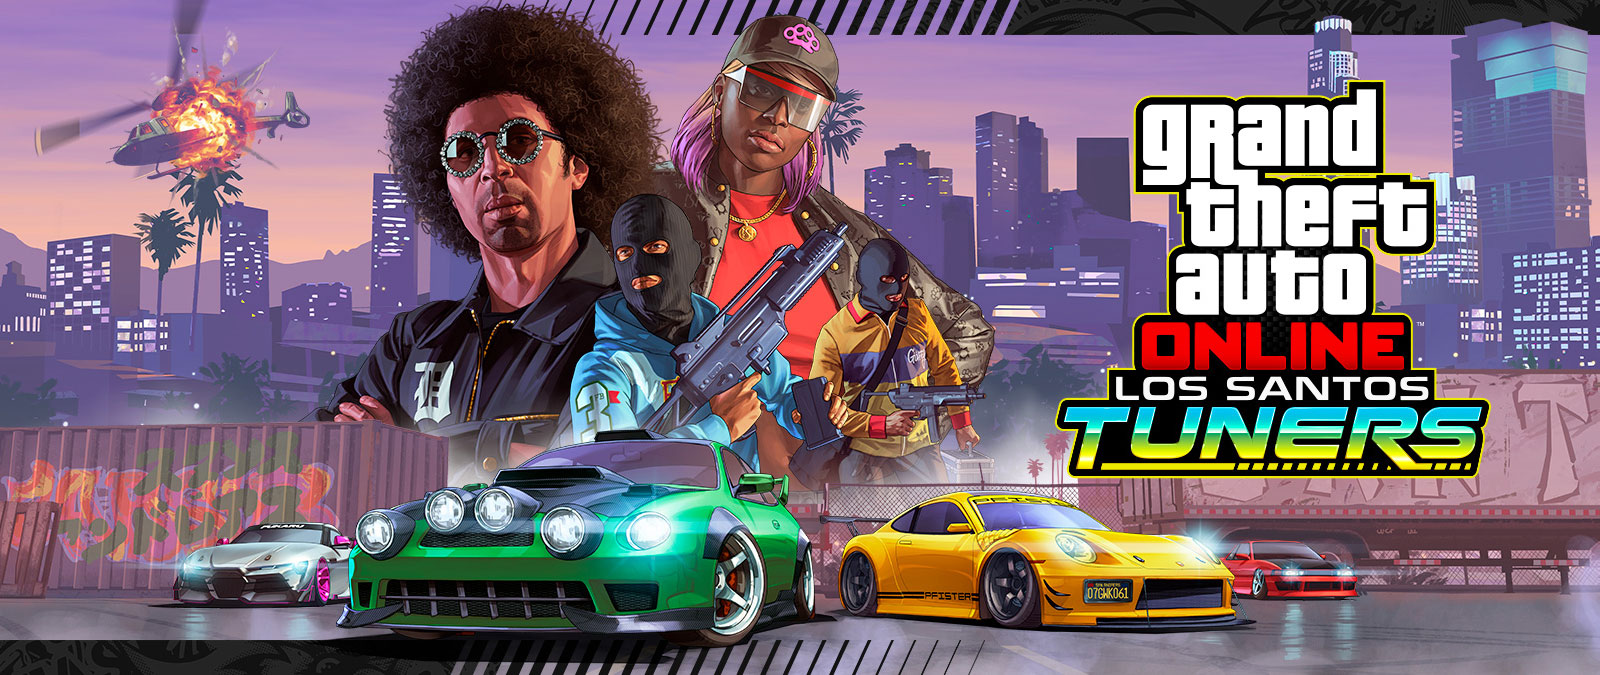 Grand Theft Auto Online, Los Santos Tuners. Fire karakterer poserer foran en bysilhuett og fire superbiler under dem 